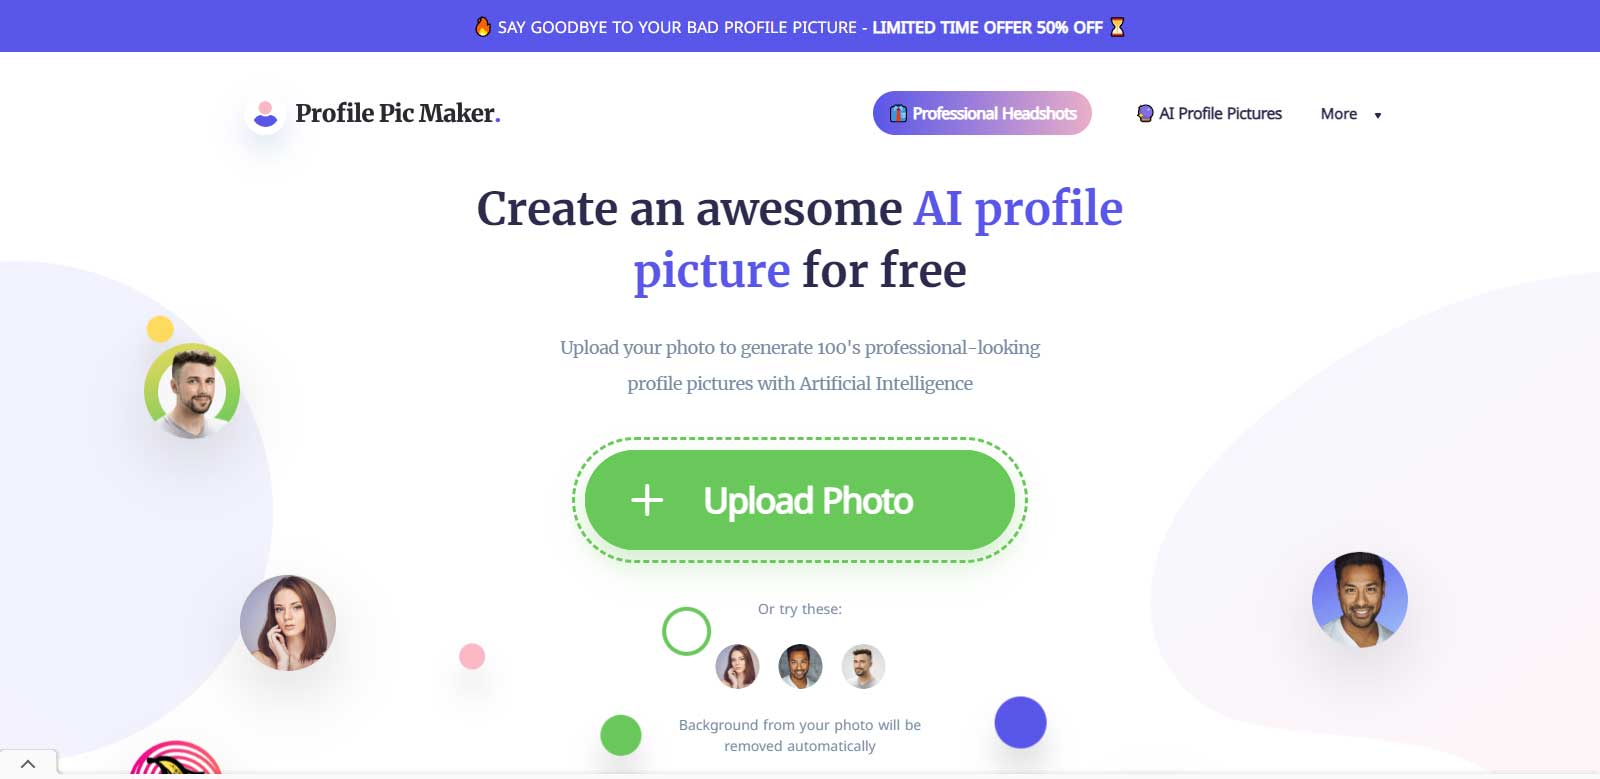 Profile Pic Maker – AI Profile Picture Maker